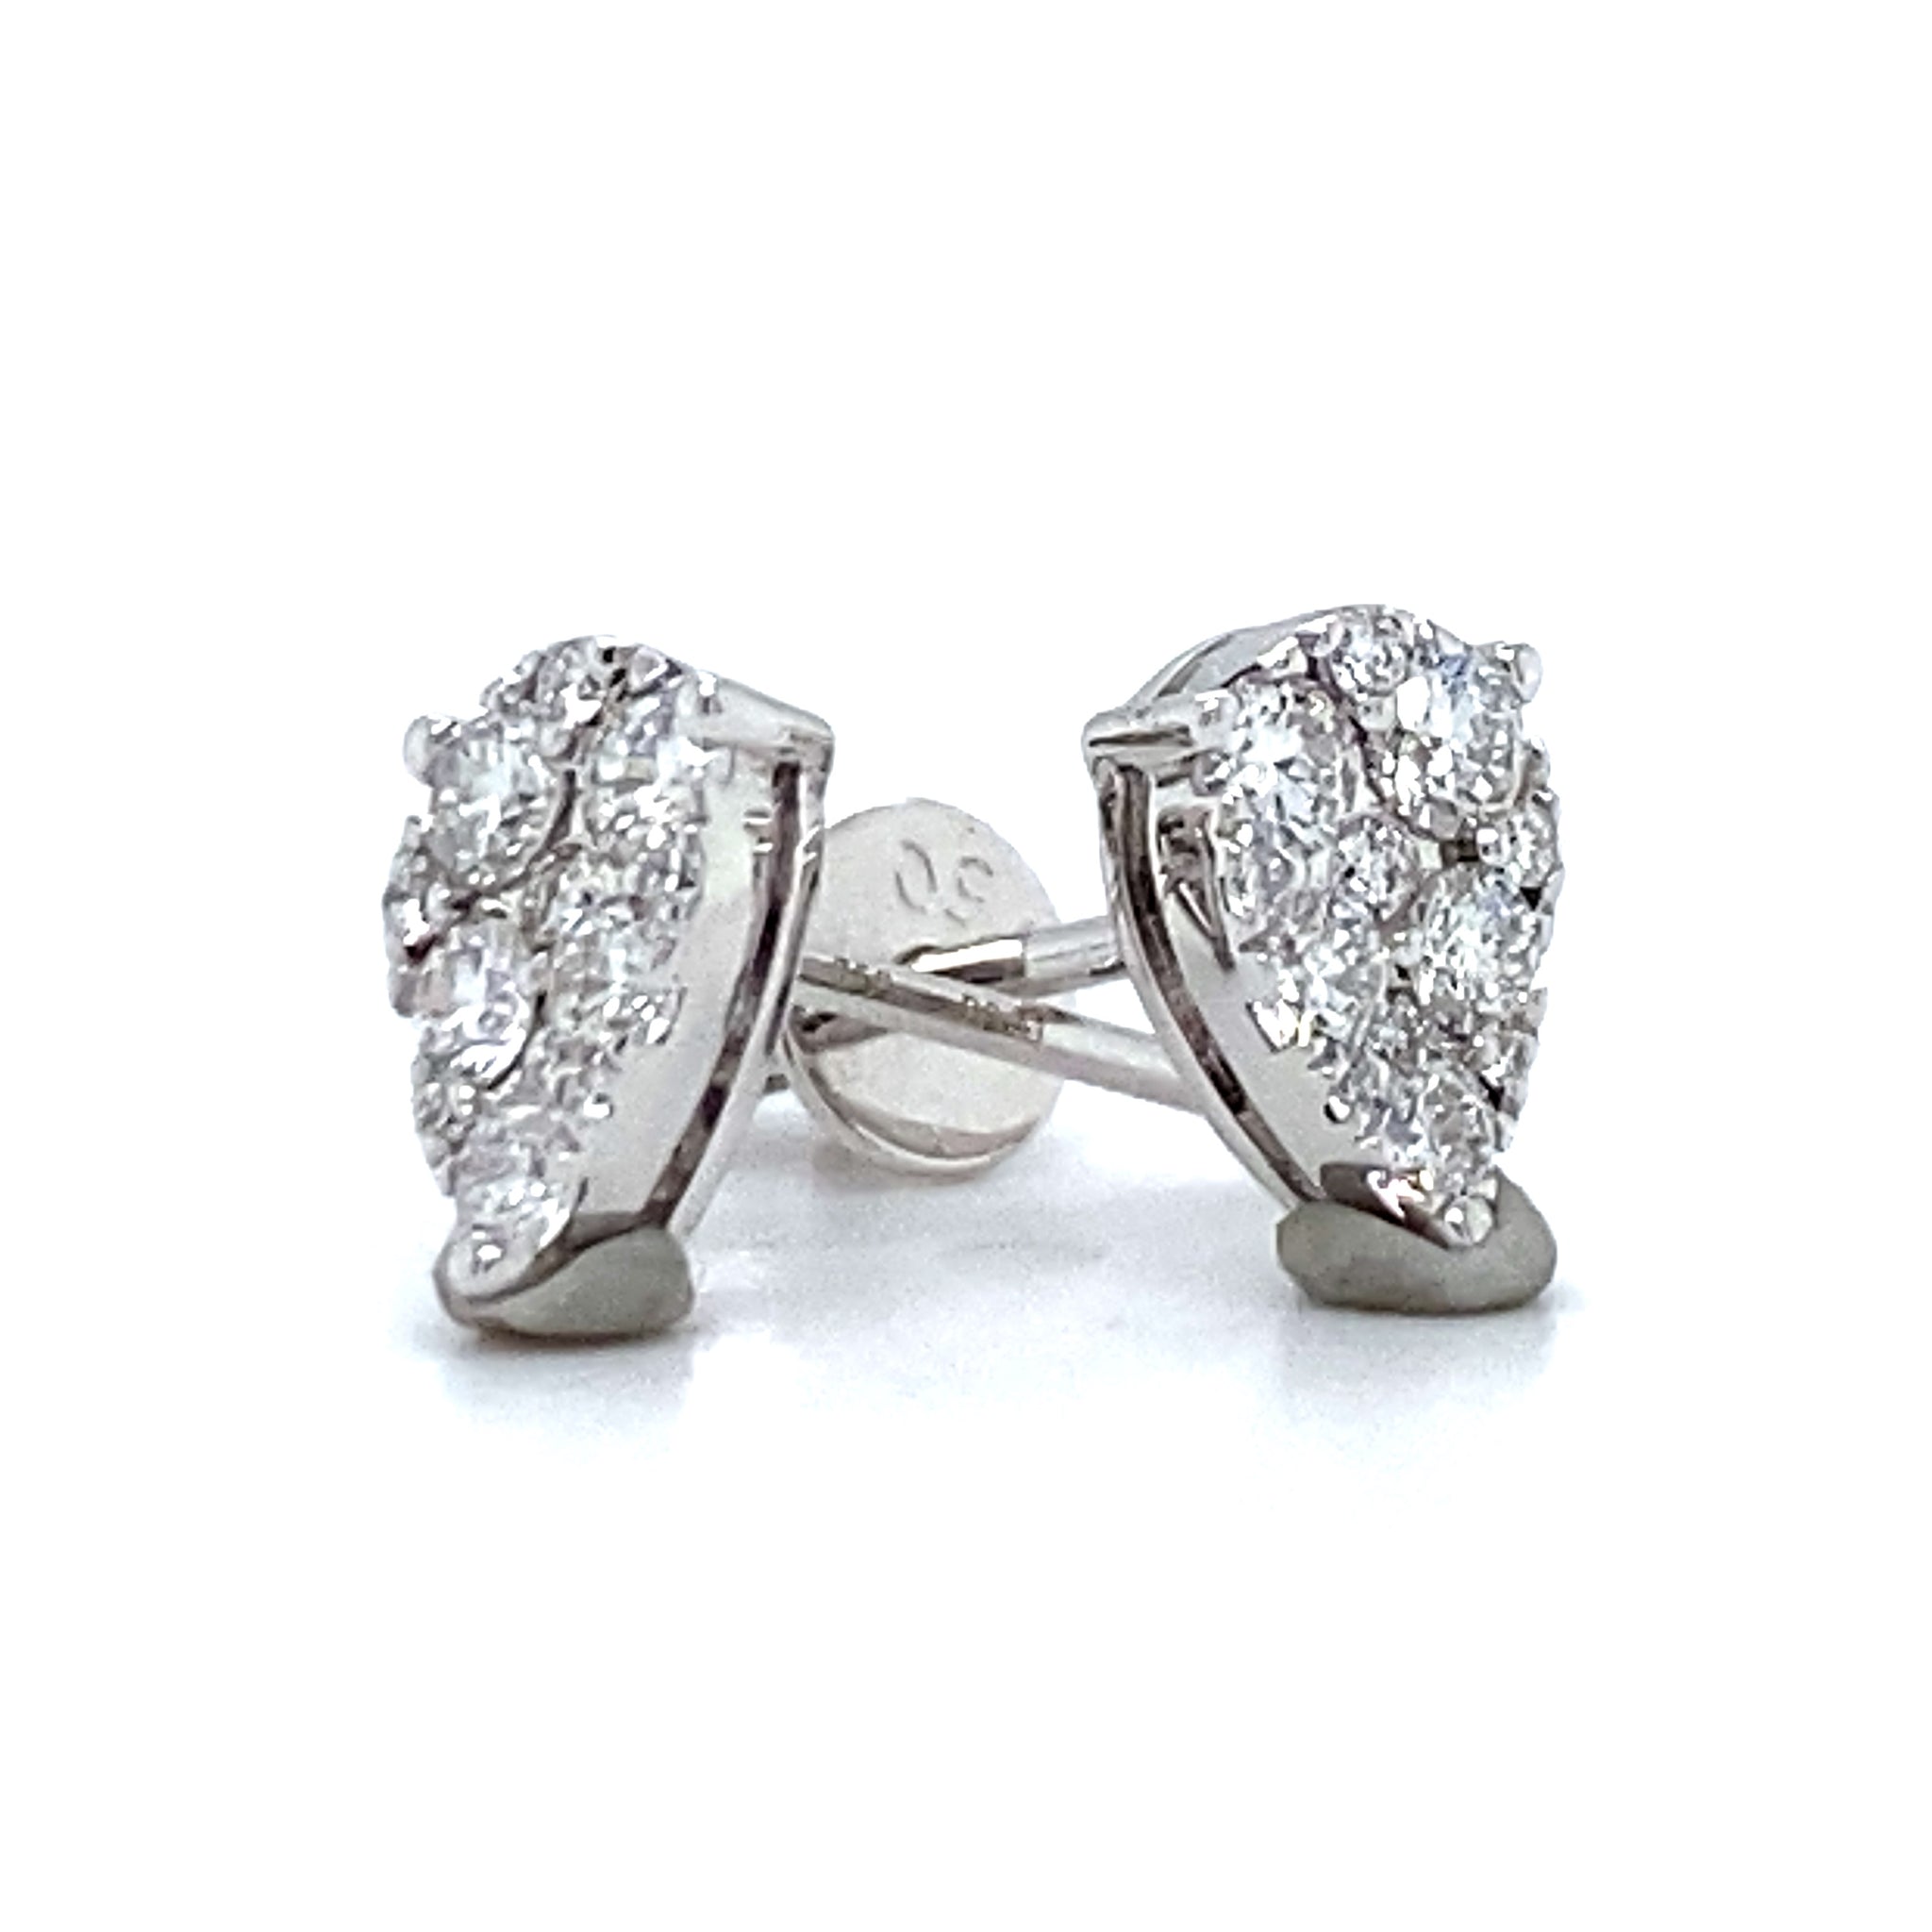 Sandy Meerdere Vriend Diamanten Oorbellen ✓ 0.41 crt ✓ TW/VS – Diamonds & Jewels Amsterdam